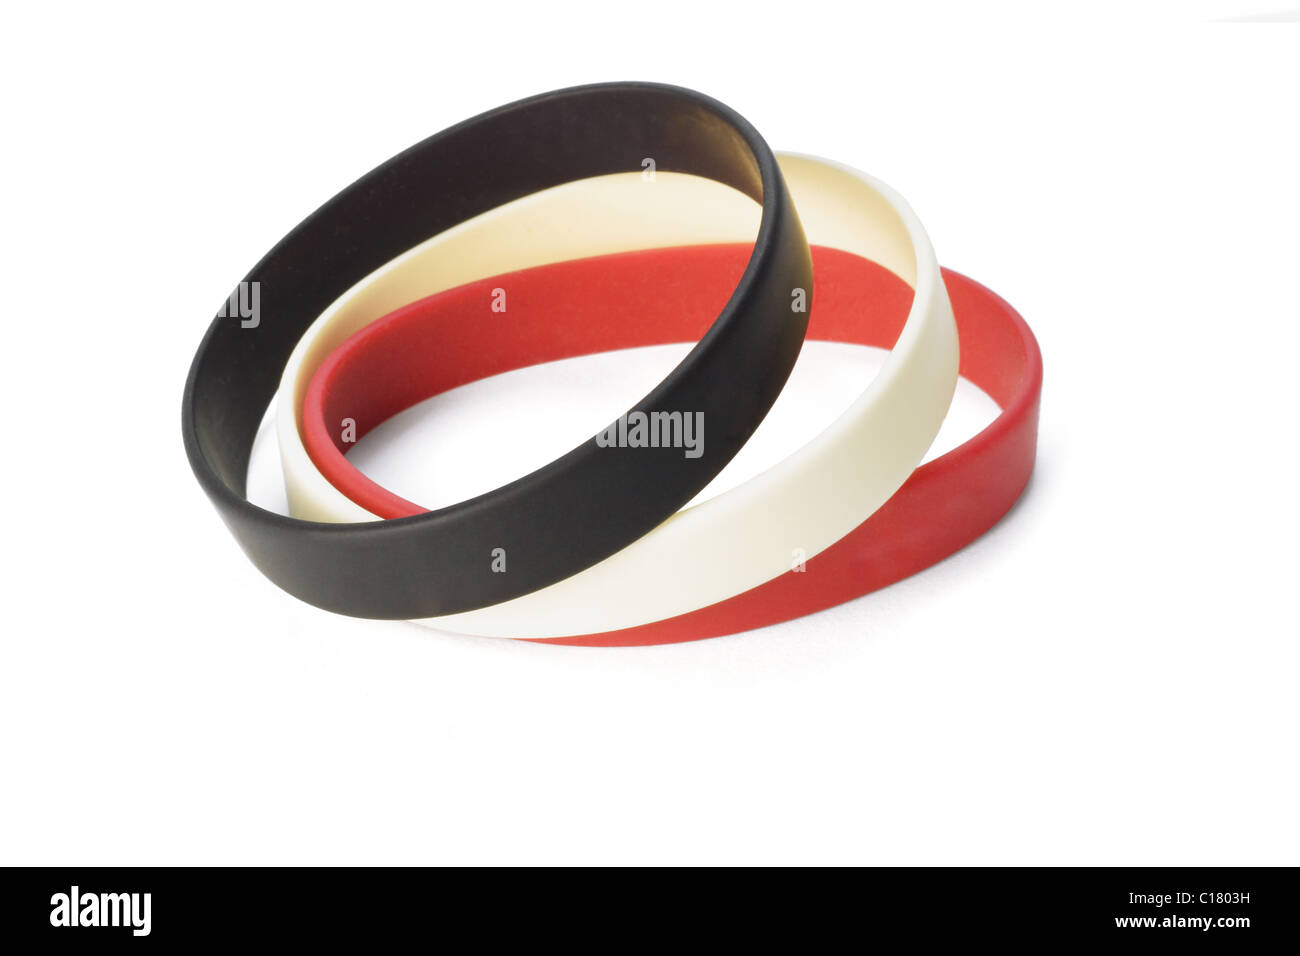 Les bracelets élastiques colorés sur fond blanc Banque D'Images